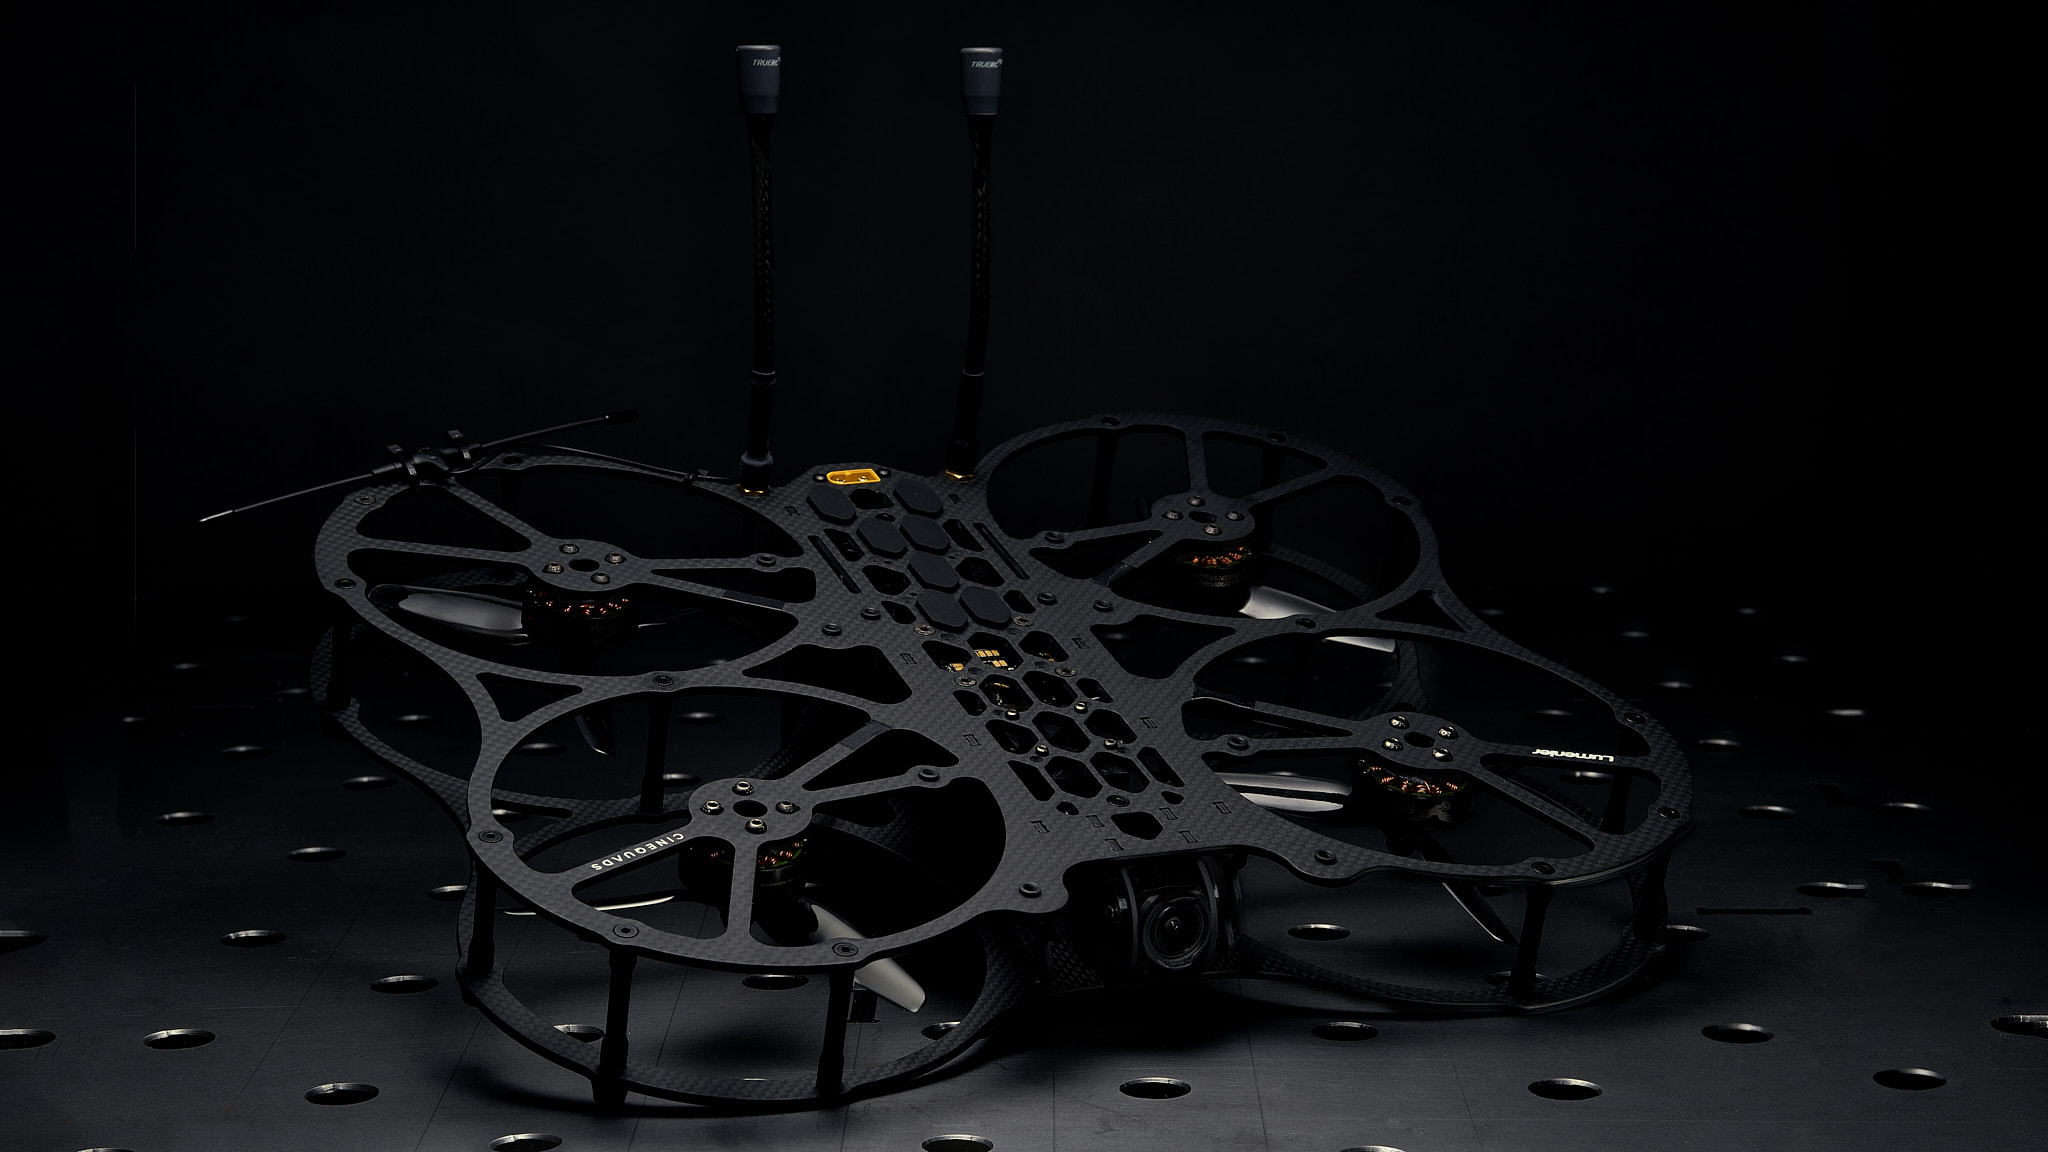 FPV Kopter Eigenbau für Cinematische Drohnenaufnahmen